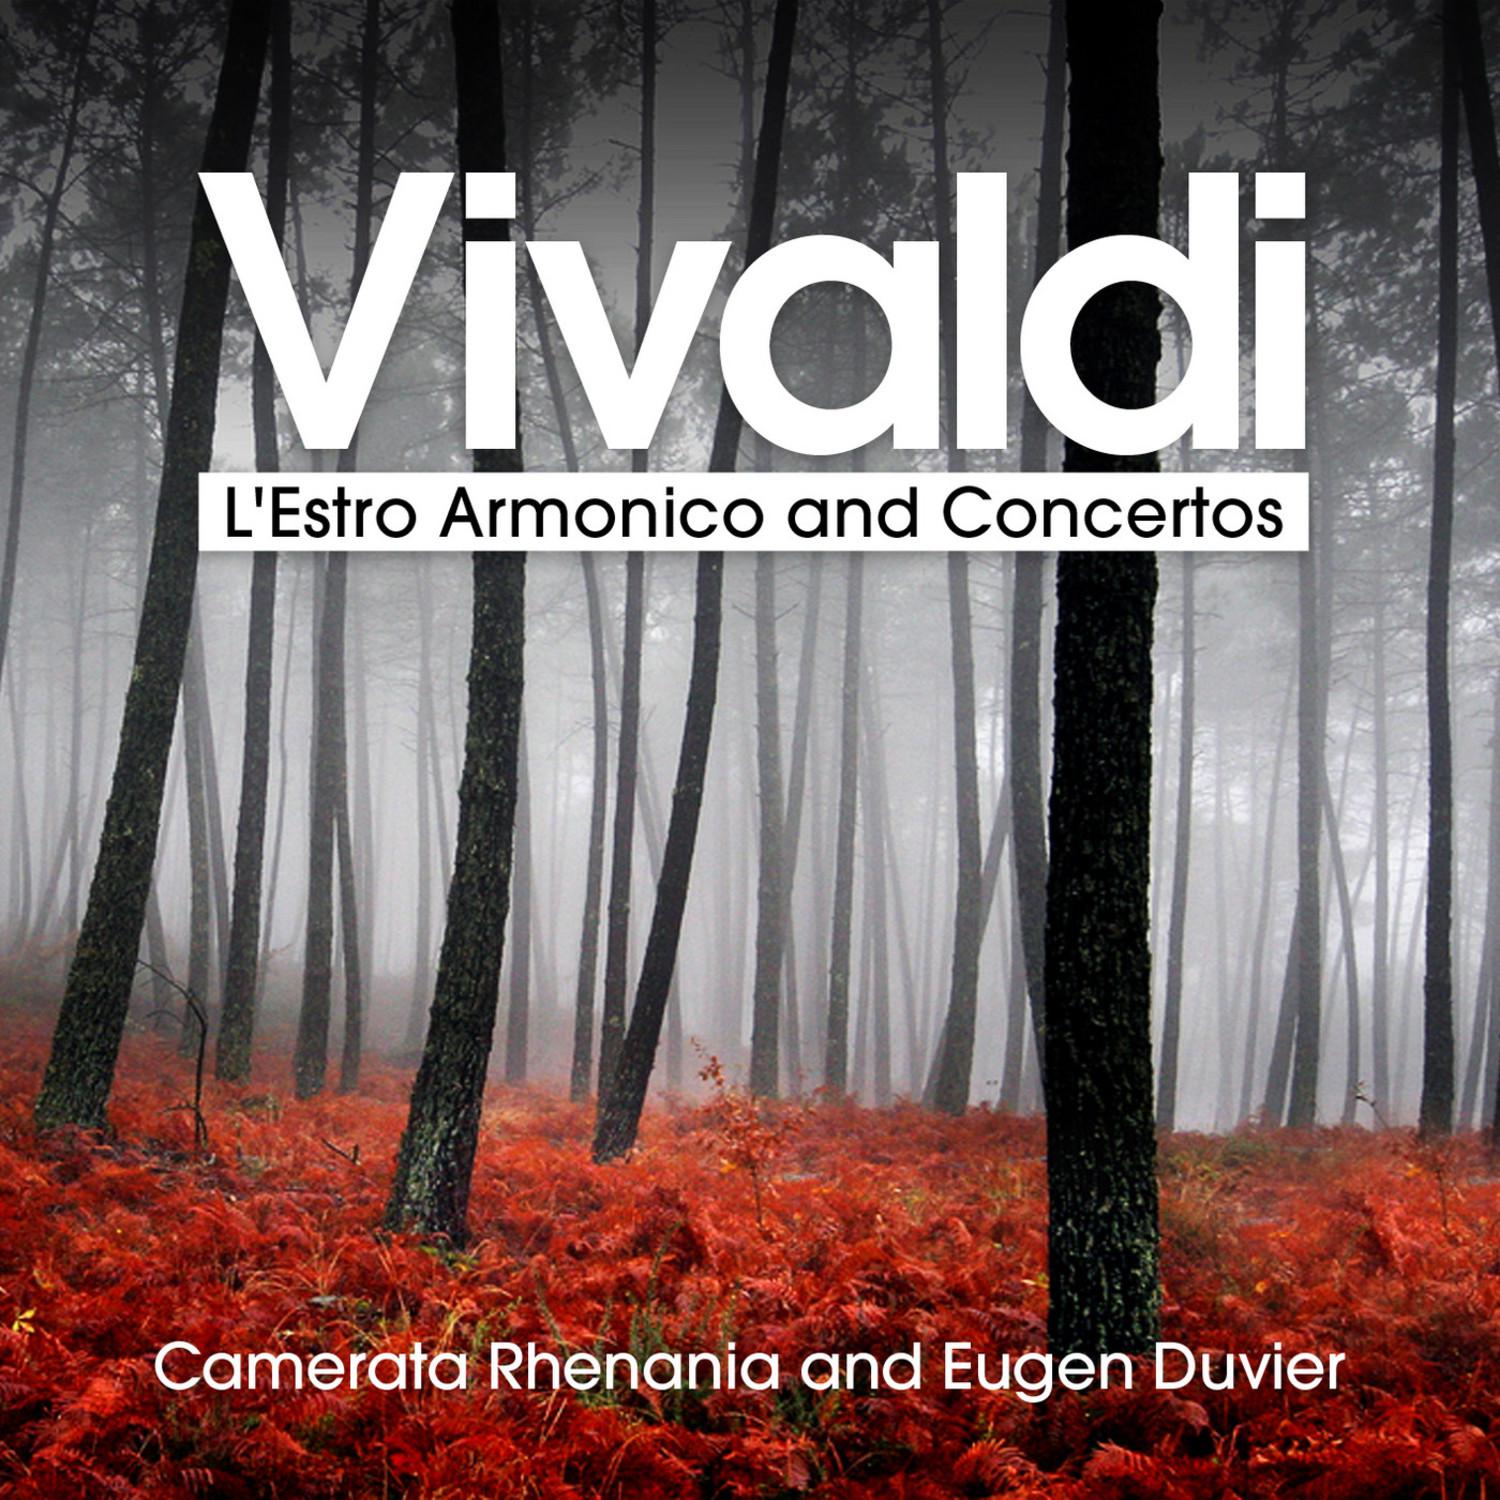 L'Estro Armonico, Op. 3 - Concerto No. 1 in D Major for 4 Violins and Strings, RV 549: III. Allegro